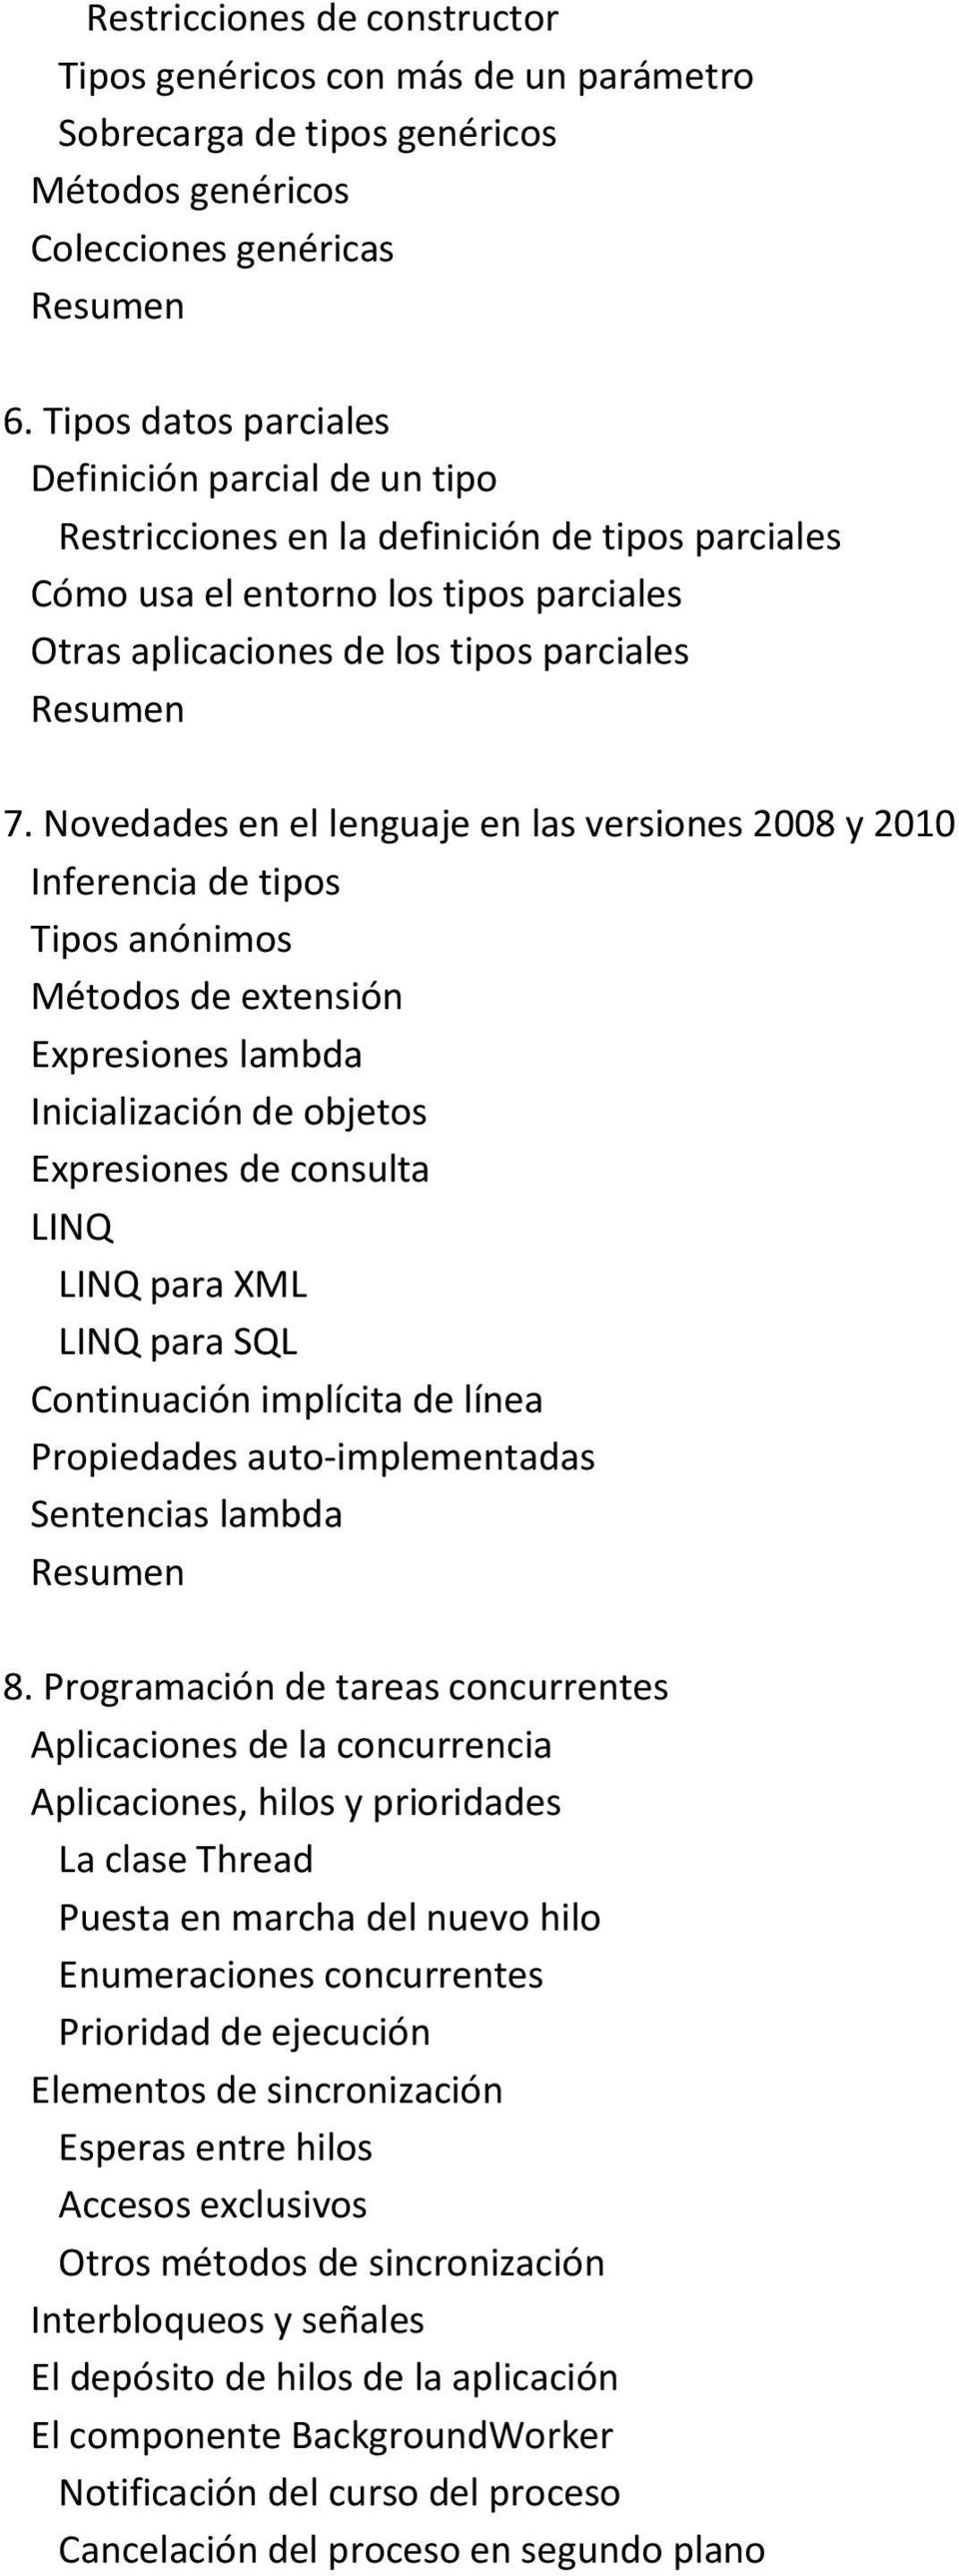 Novedades en el lenguaje en las versiones 2008 y 2010 Inferencia de tipos Tipos anónimos Métodos de extensión Expresiones lambda Inicialización de objetos Expresiones de consulta LINQ LINQ para XML